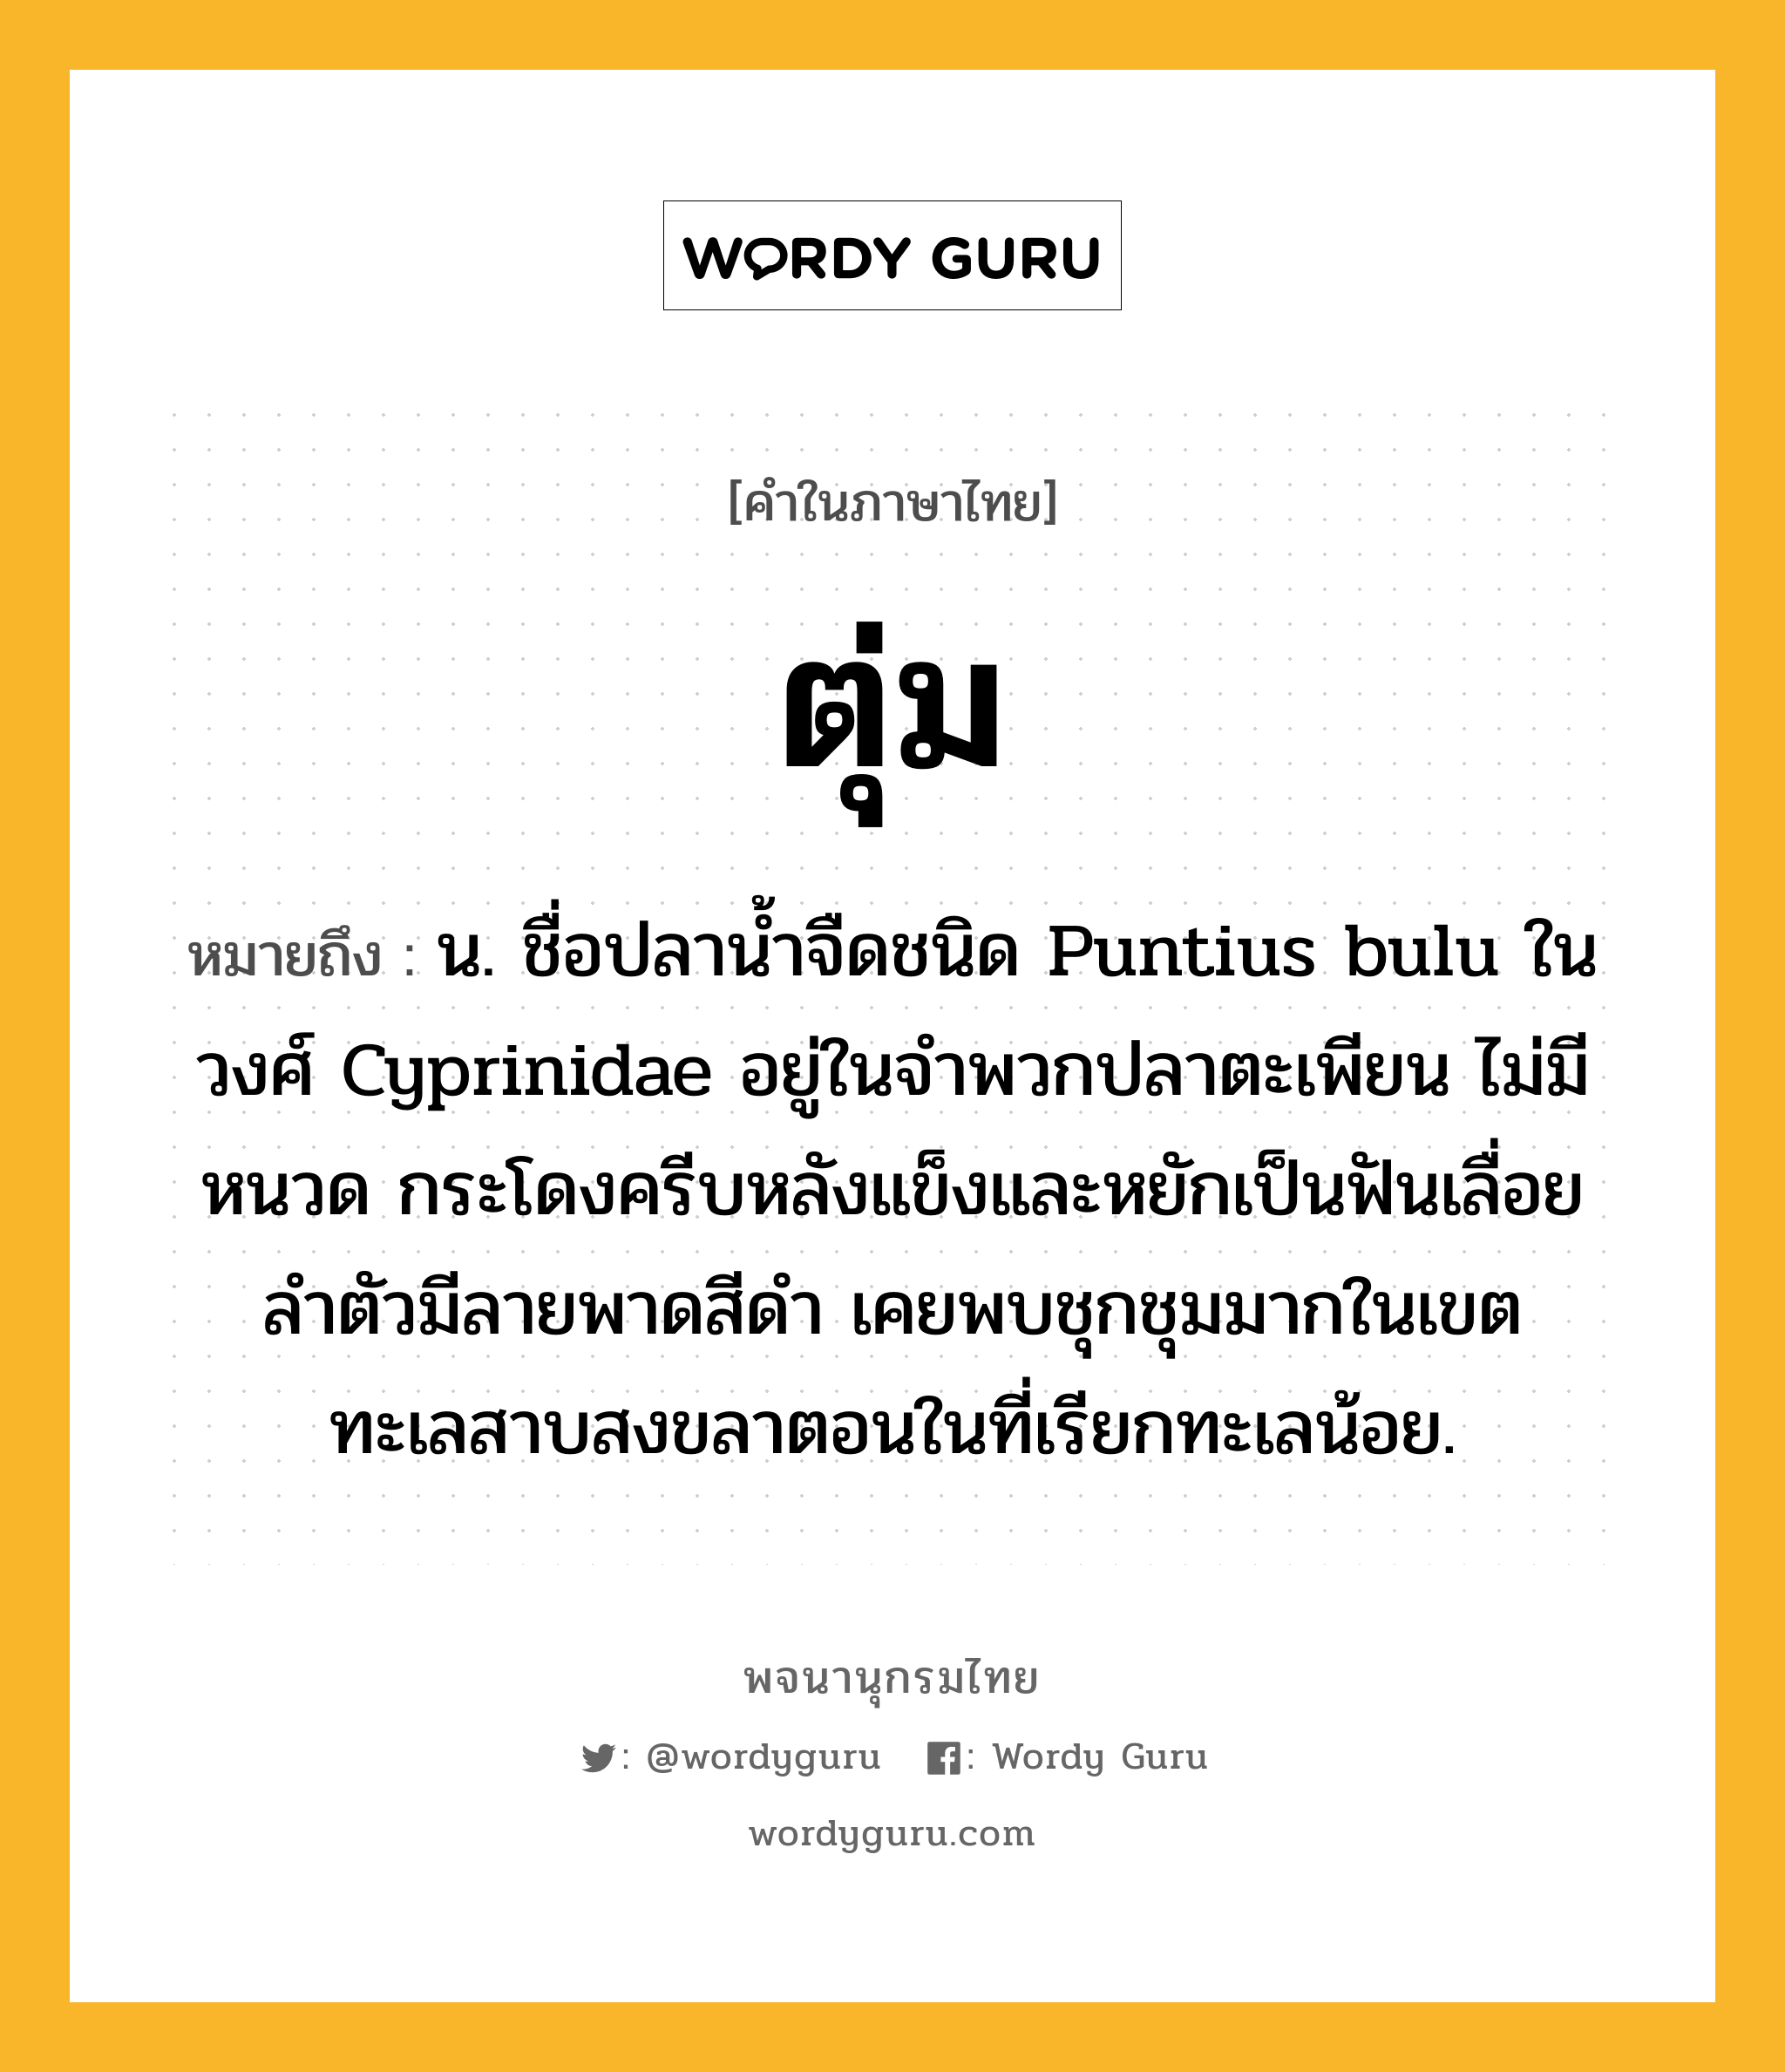 ตุ่ม ความหมาย หมายถึงอะไร?, คำในภาษาไทย ตุ่ม หมายถึง น. ชื่อปลานํ้าจืดชนิด Puntius bulu ในวงศ์ Cyprinidae อยู่ในจําพวกปลาตะเพียน ไม่มีหนวด กระโดงครีบหลังแข็งและหยักเป็นฟันเลื่อย ลําตัวมีลายพาดสีดํา เคยพบชุกชุมมากในเขตทะเลสาบสงขลาตอนในที่เรียกทะเลน้อย.